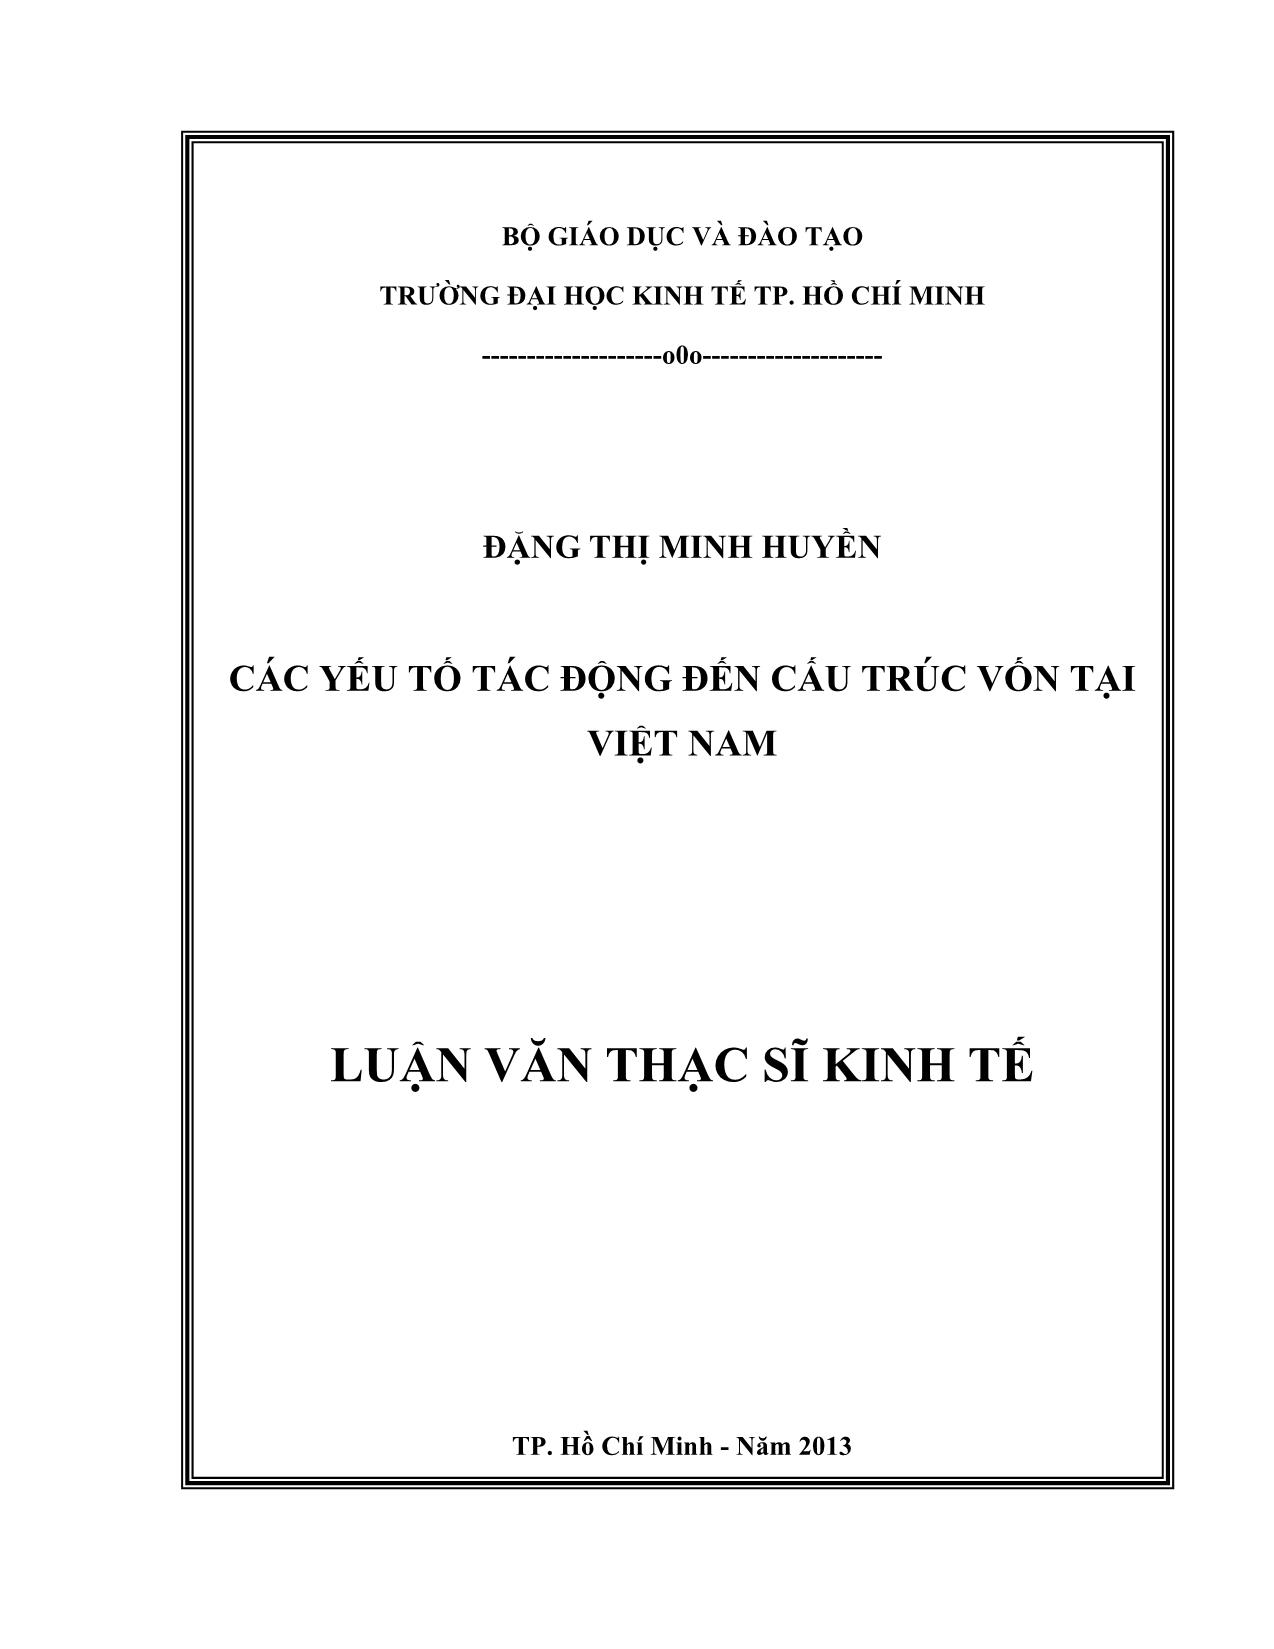 Luận văn Các yếu tố tác động đến cấu trúc vốn tại Việt Nam trang 1